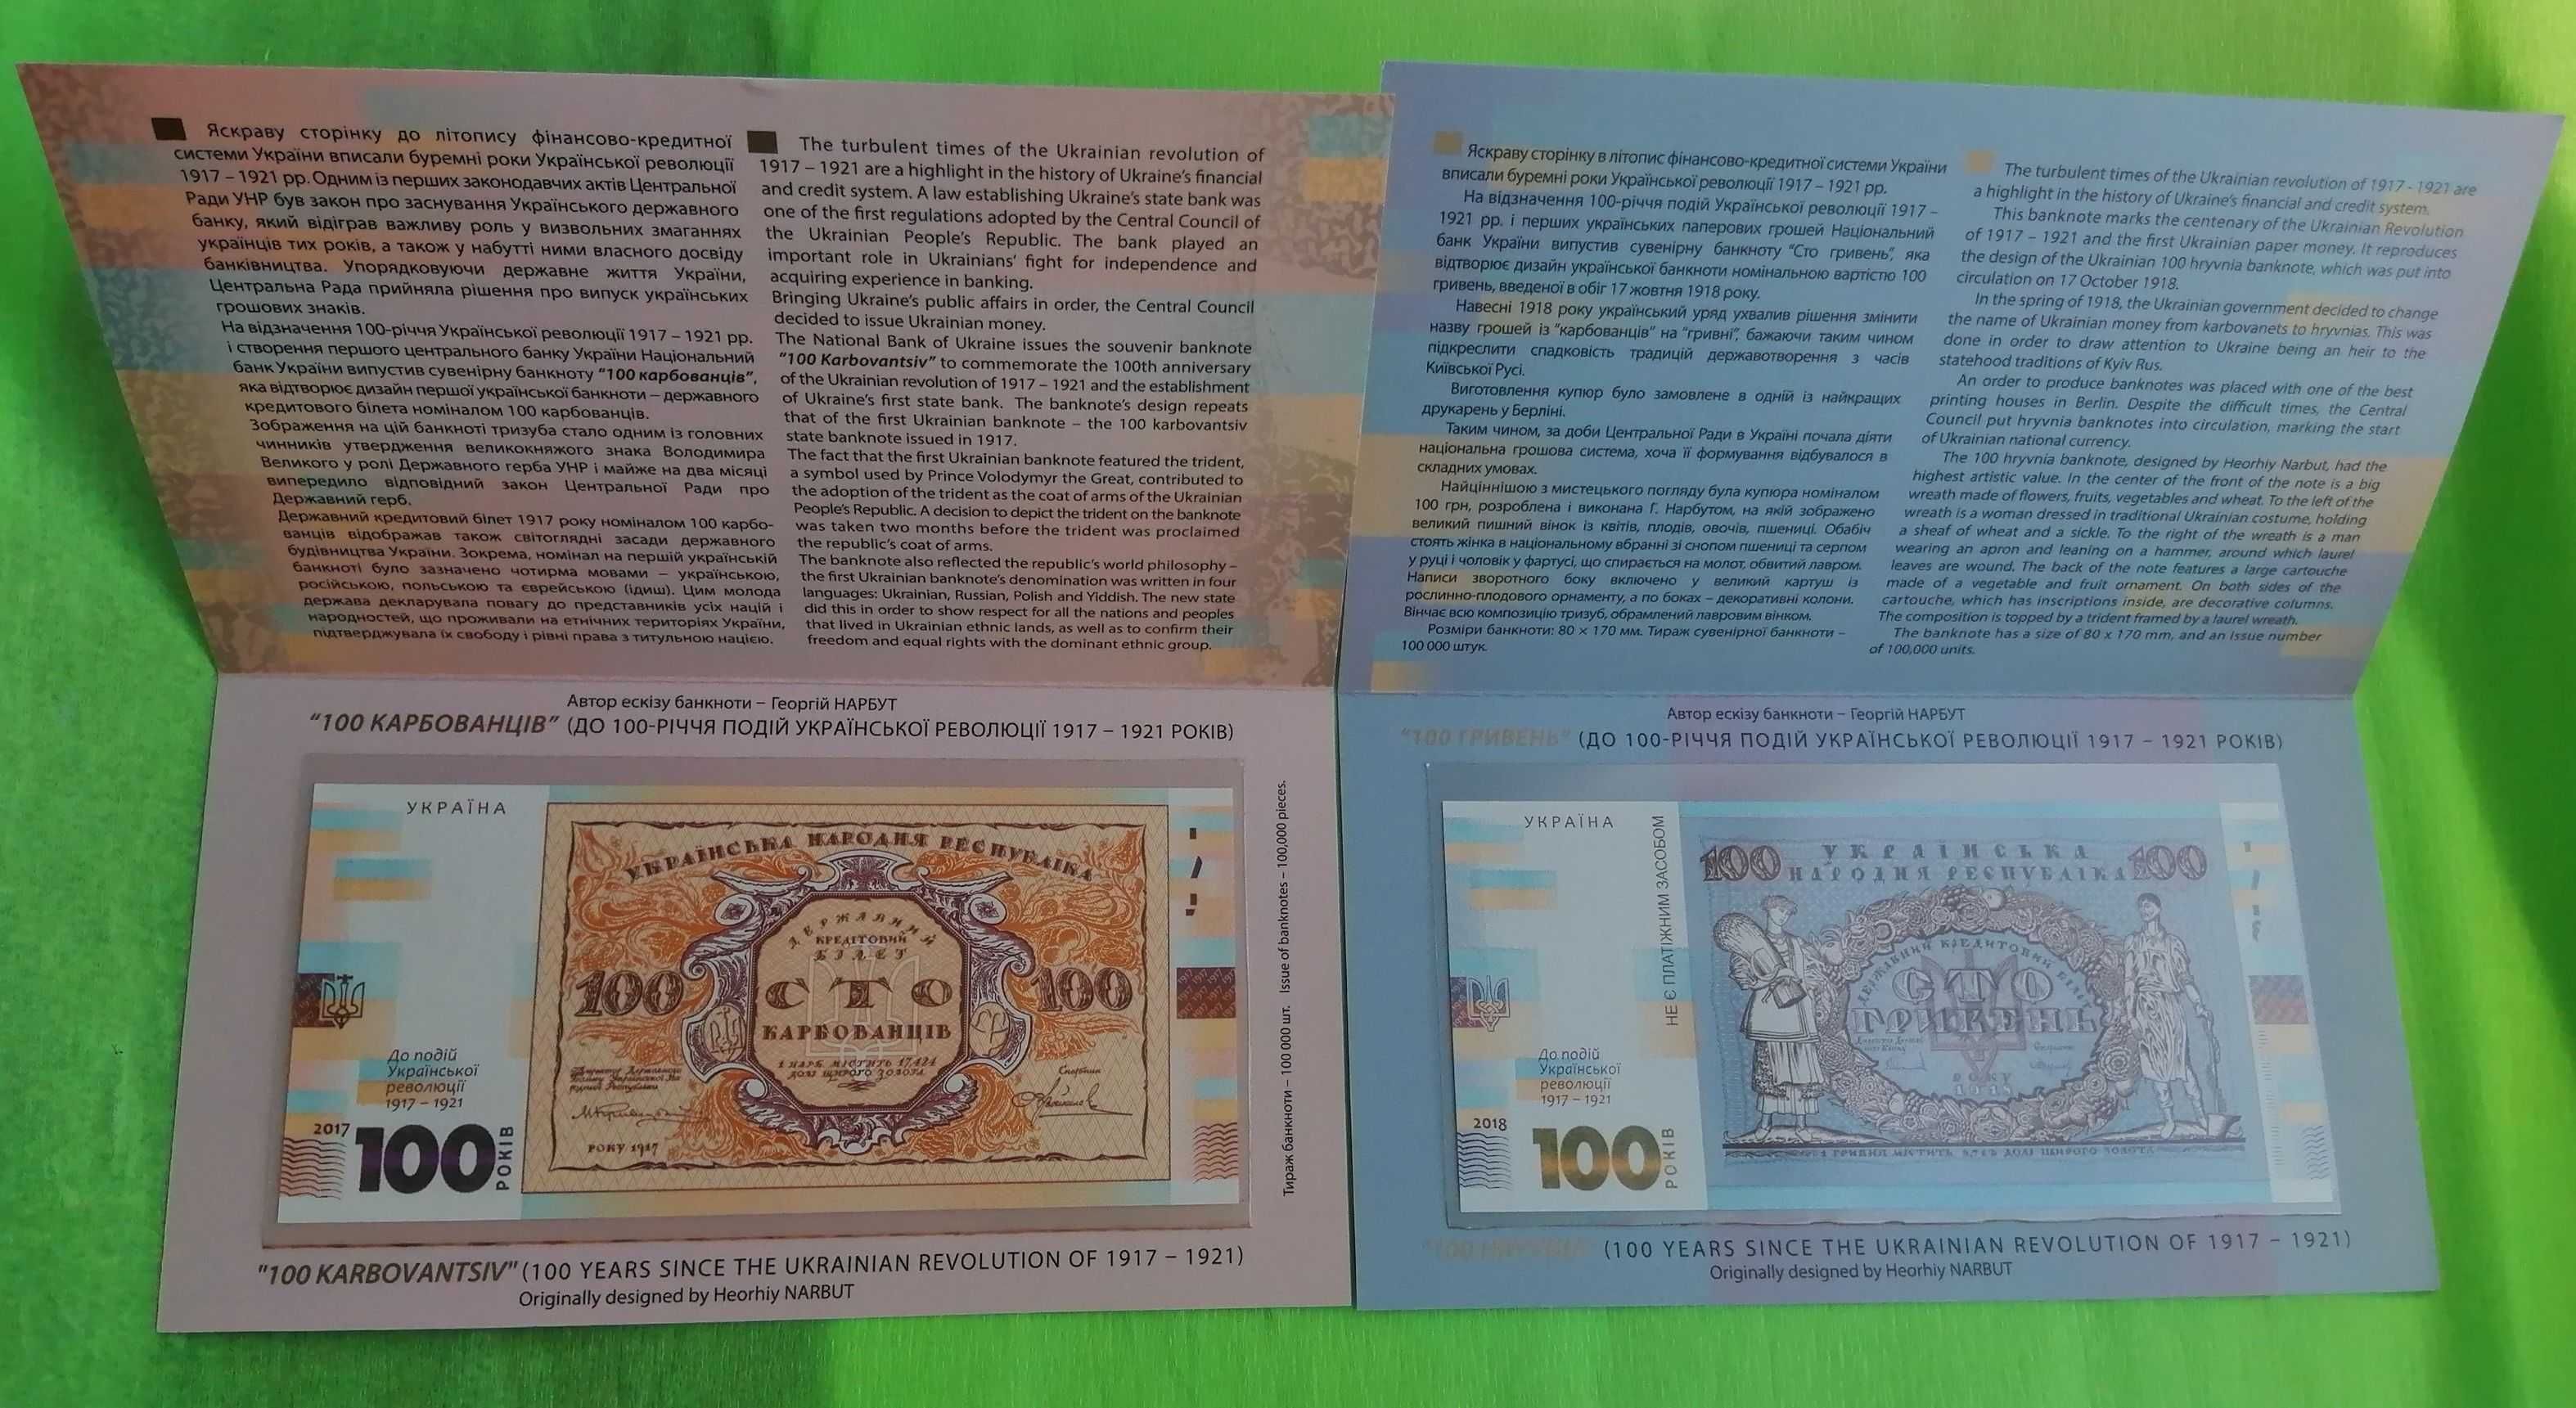 Пам'ятна банкнота  20 грн до 160-річчя від дня народження І.Франка